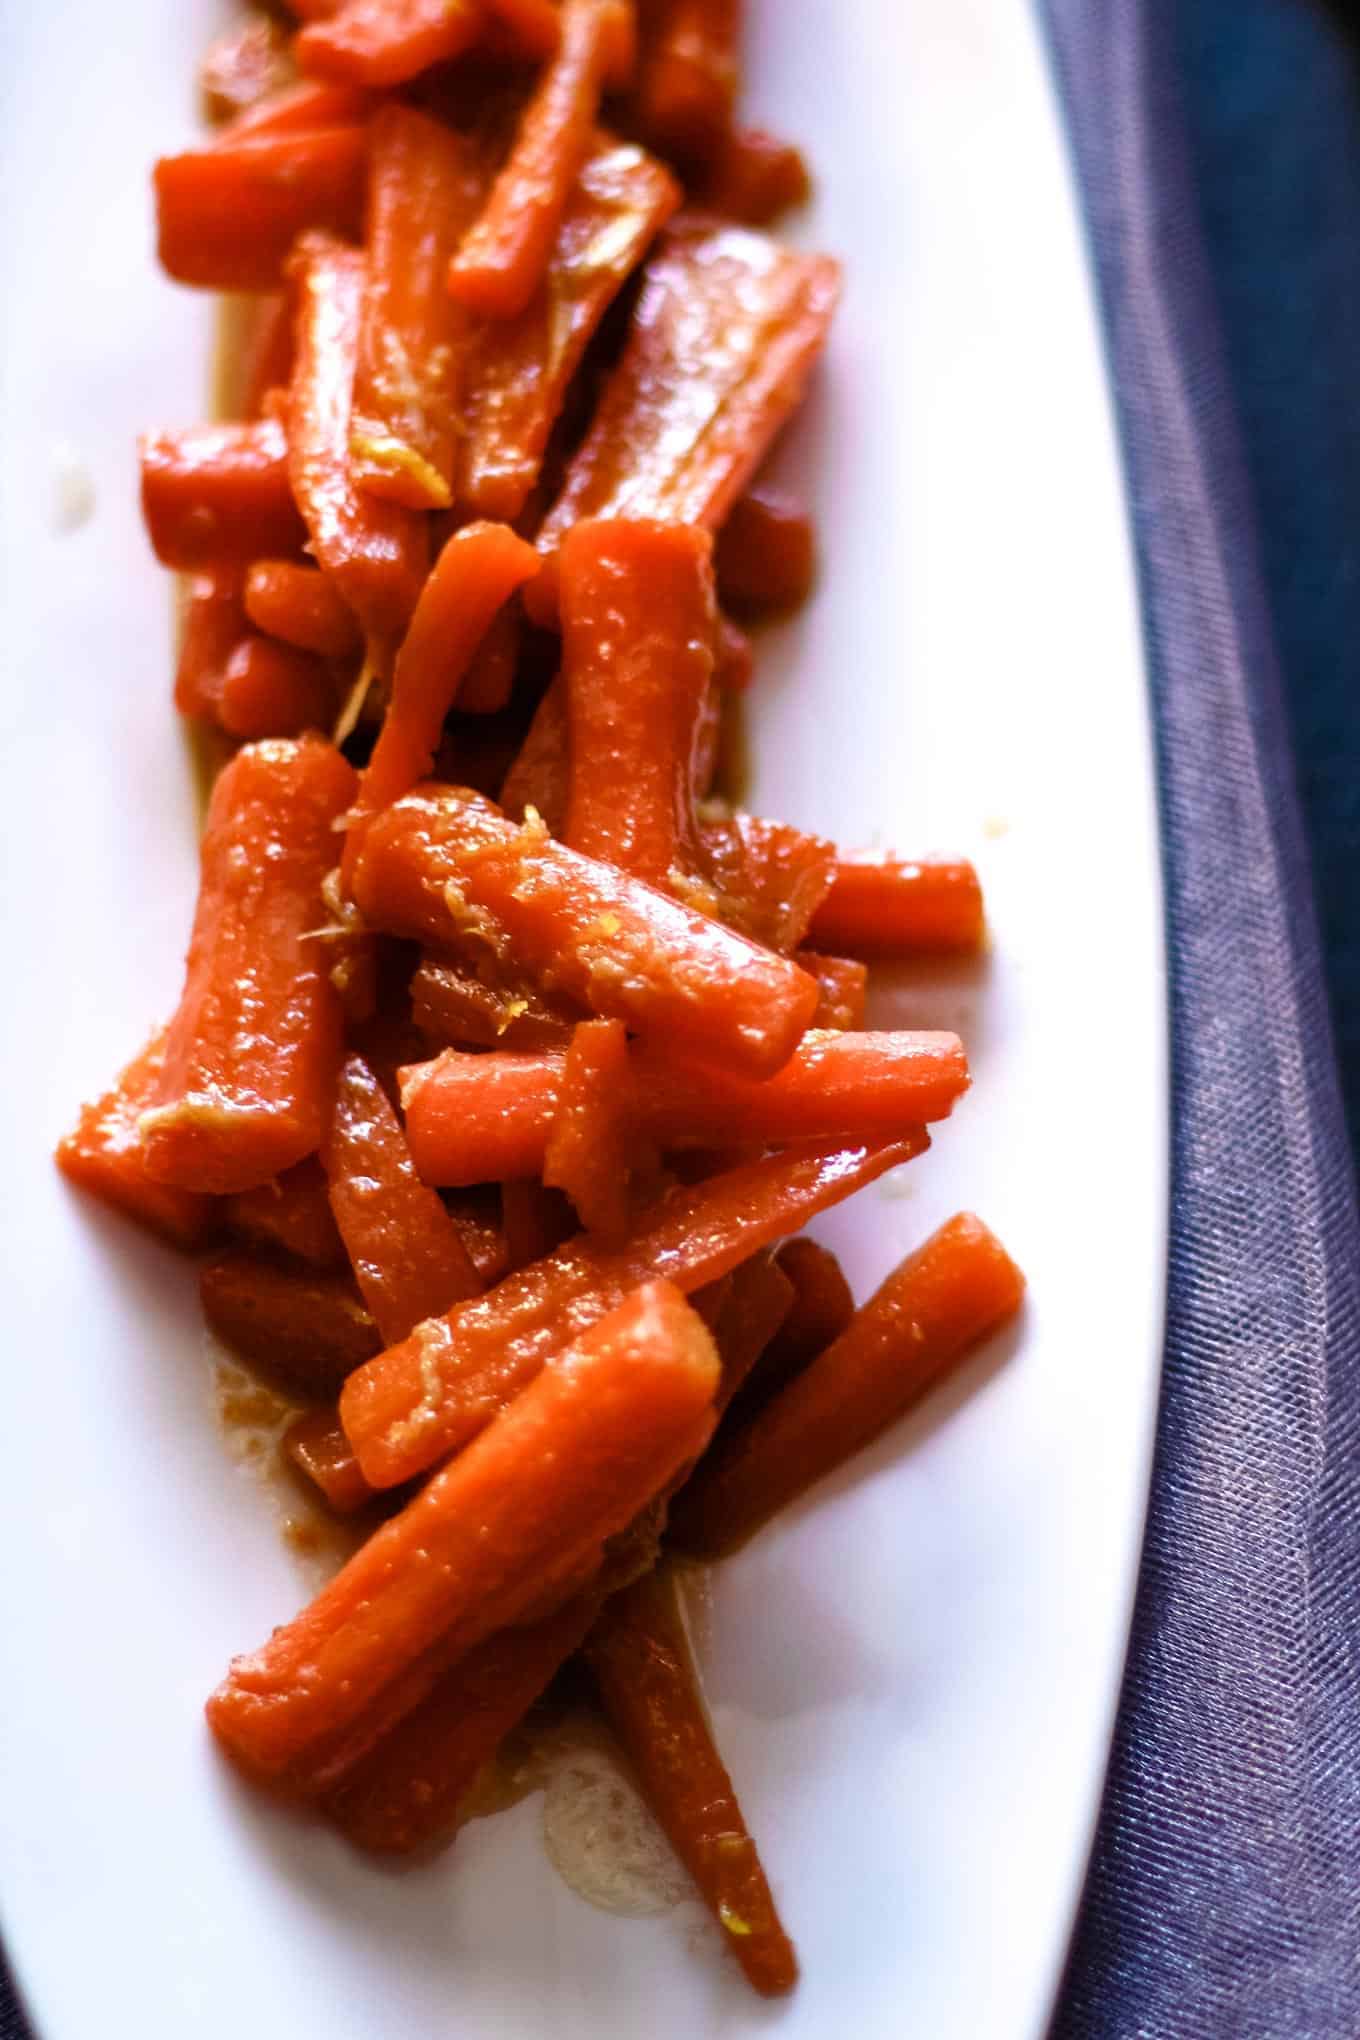 https://www.honeyandbirch.com/wp-content/uploads/2014/01/ginger-candied-carrots-3.jpg